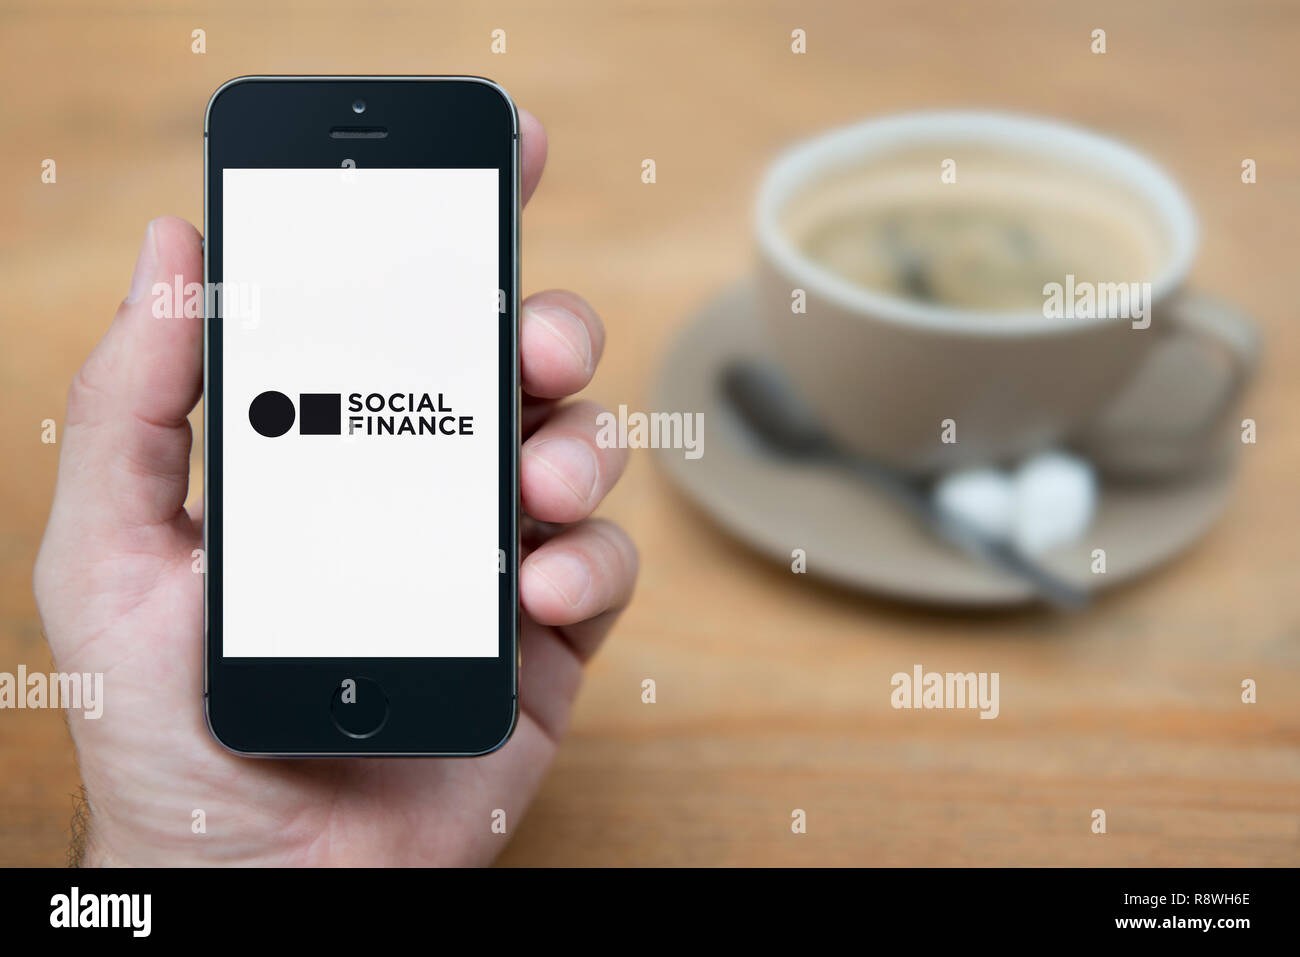 Un uomo guarda al suo iPhone che visualizza la finanza sociale logo (solo uso editoriale). Foto Stock